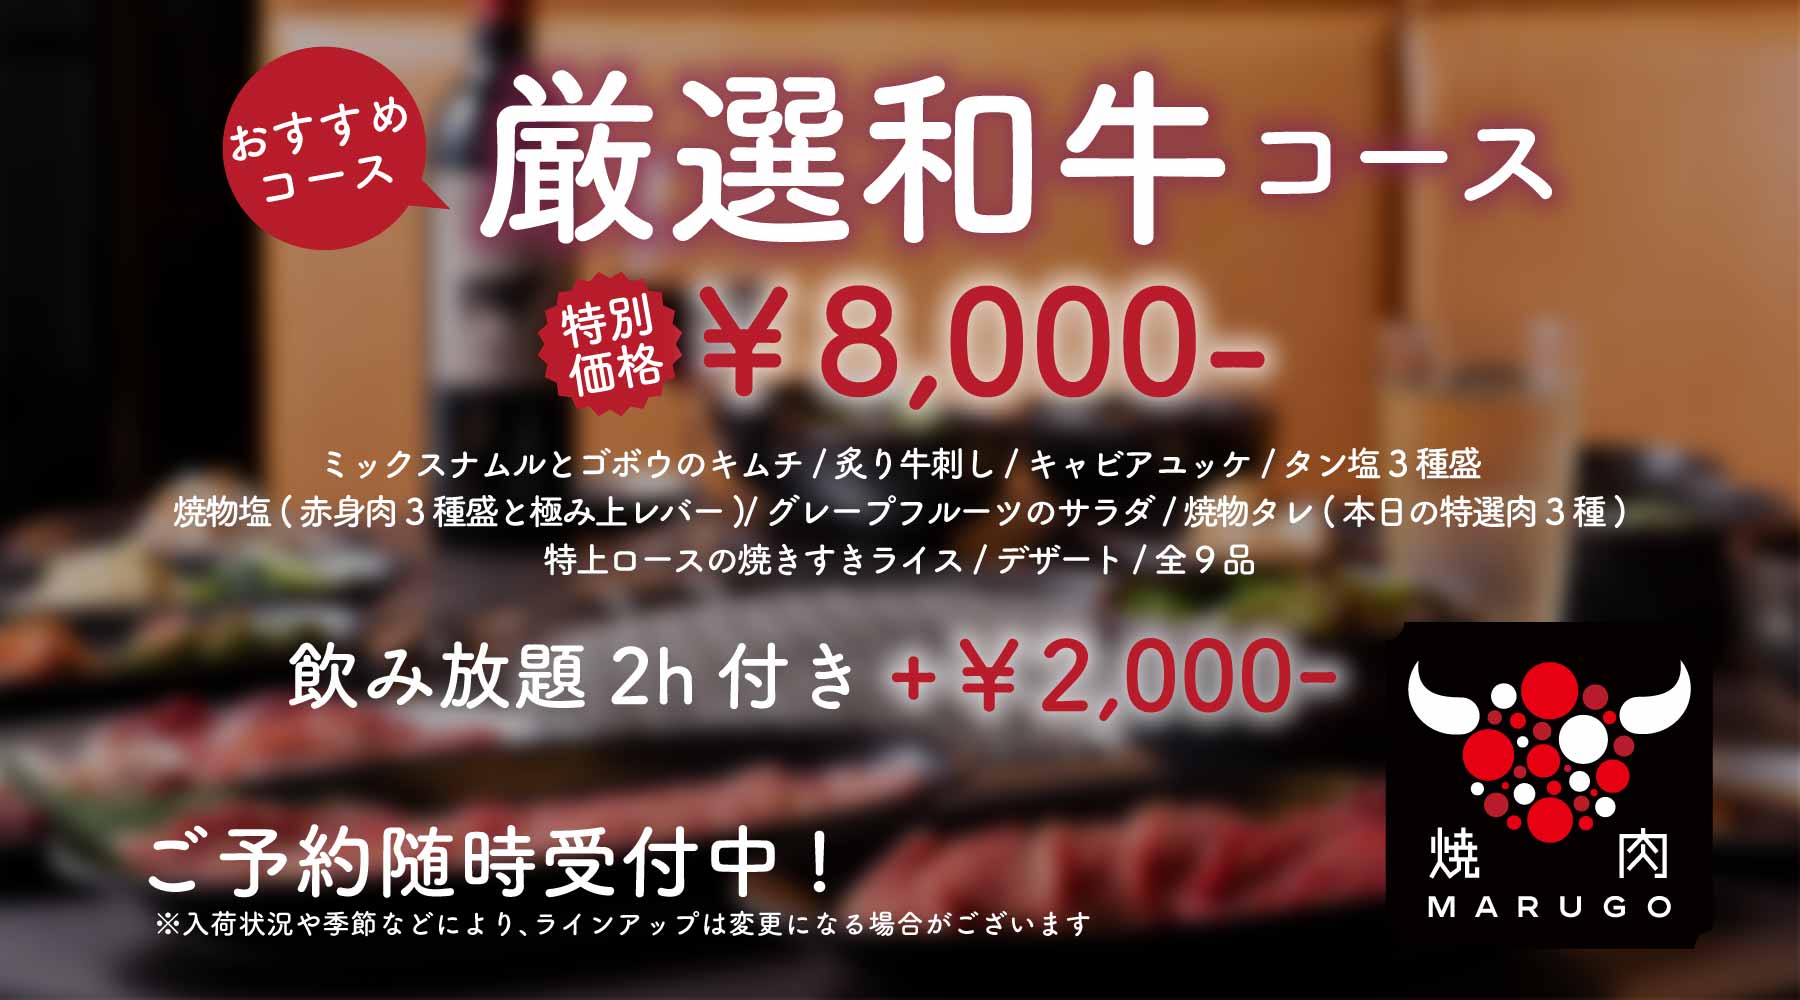 おすすめ「厳選和牛コース」¥8,000-